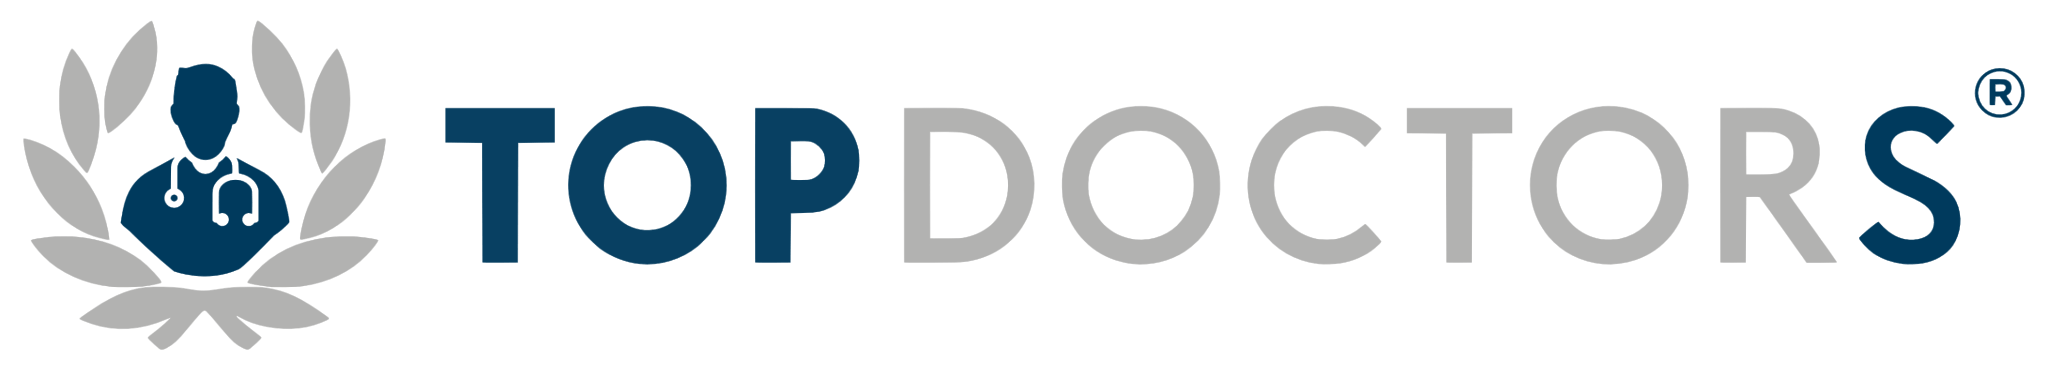 logo-top-doctors-1